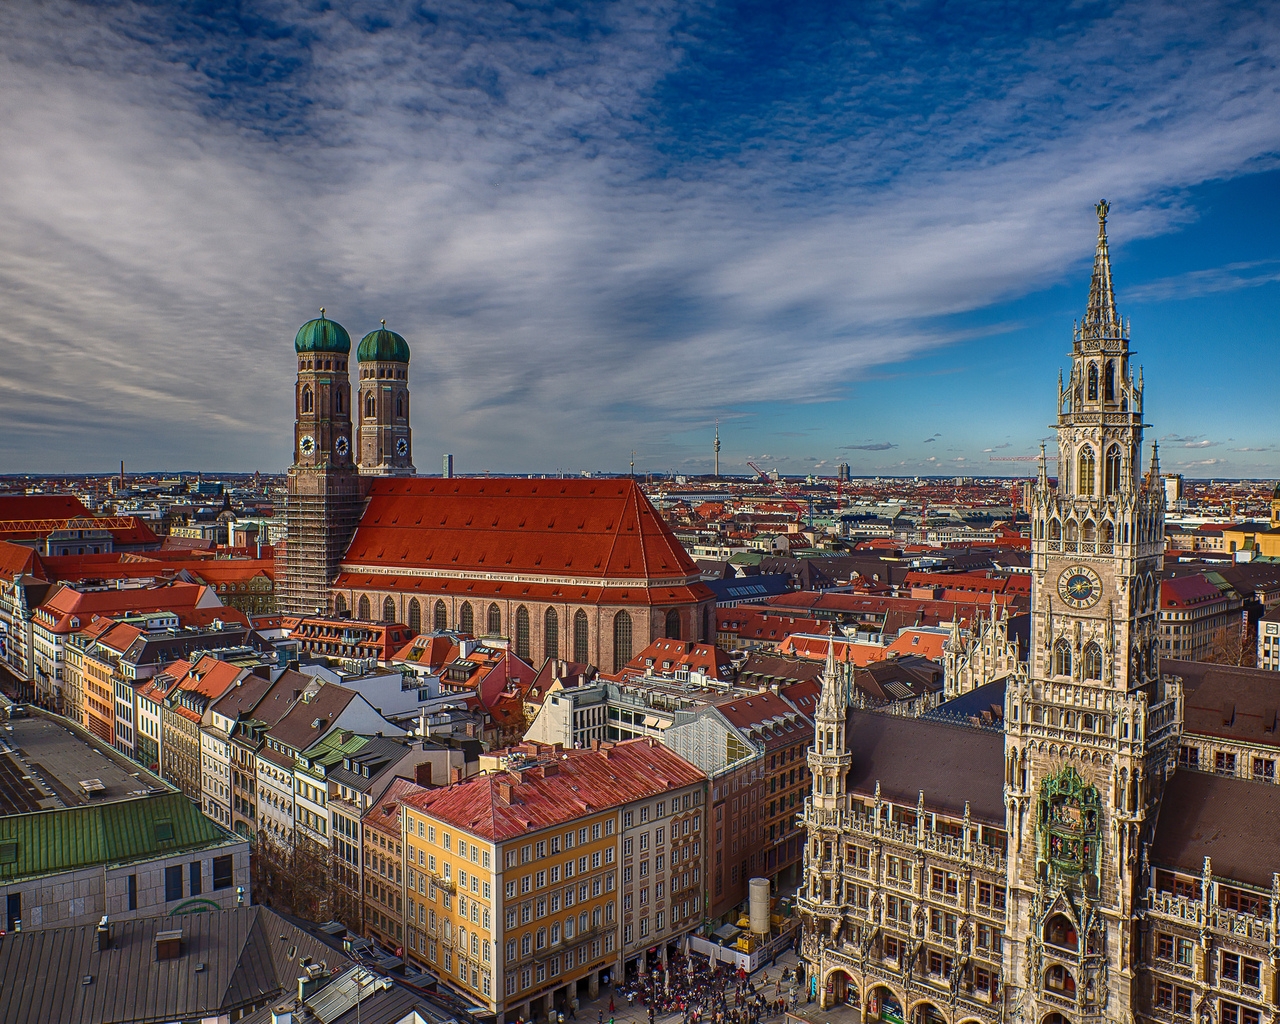 Munich Bavaria for 1280 x 1024 resolution